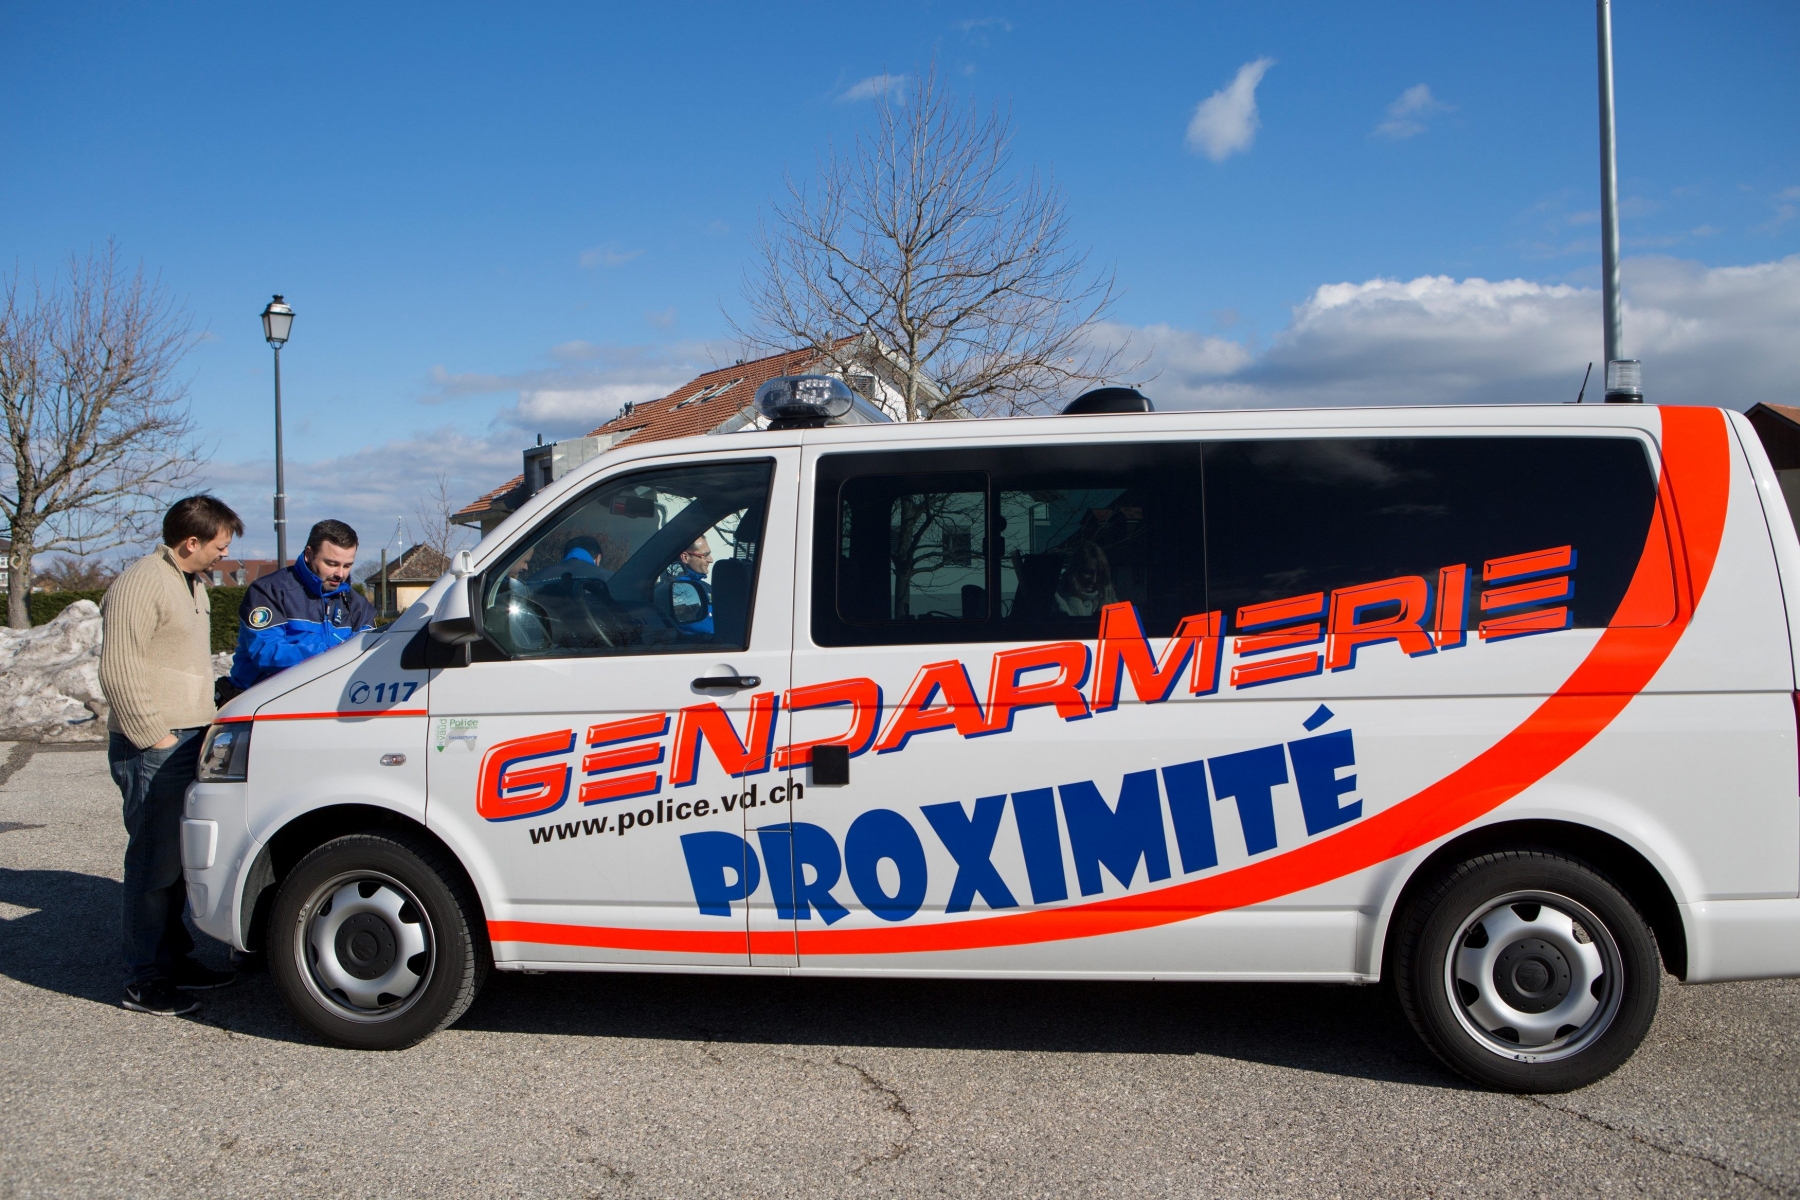 Gimel, vendredi 19 février 2016

Poste de Gendarmerie Mobile à Gimel. Grégoire Borboën à la gendarmerie



Sigfredo Haro Poste Gendarmerie Mobile, Gimel